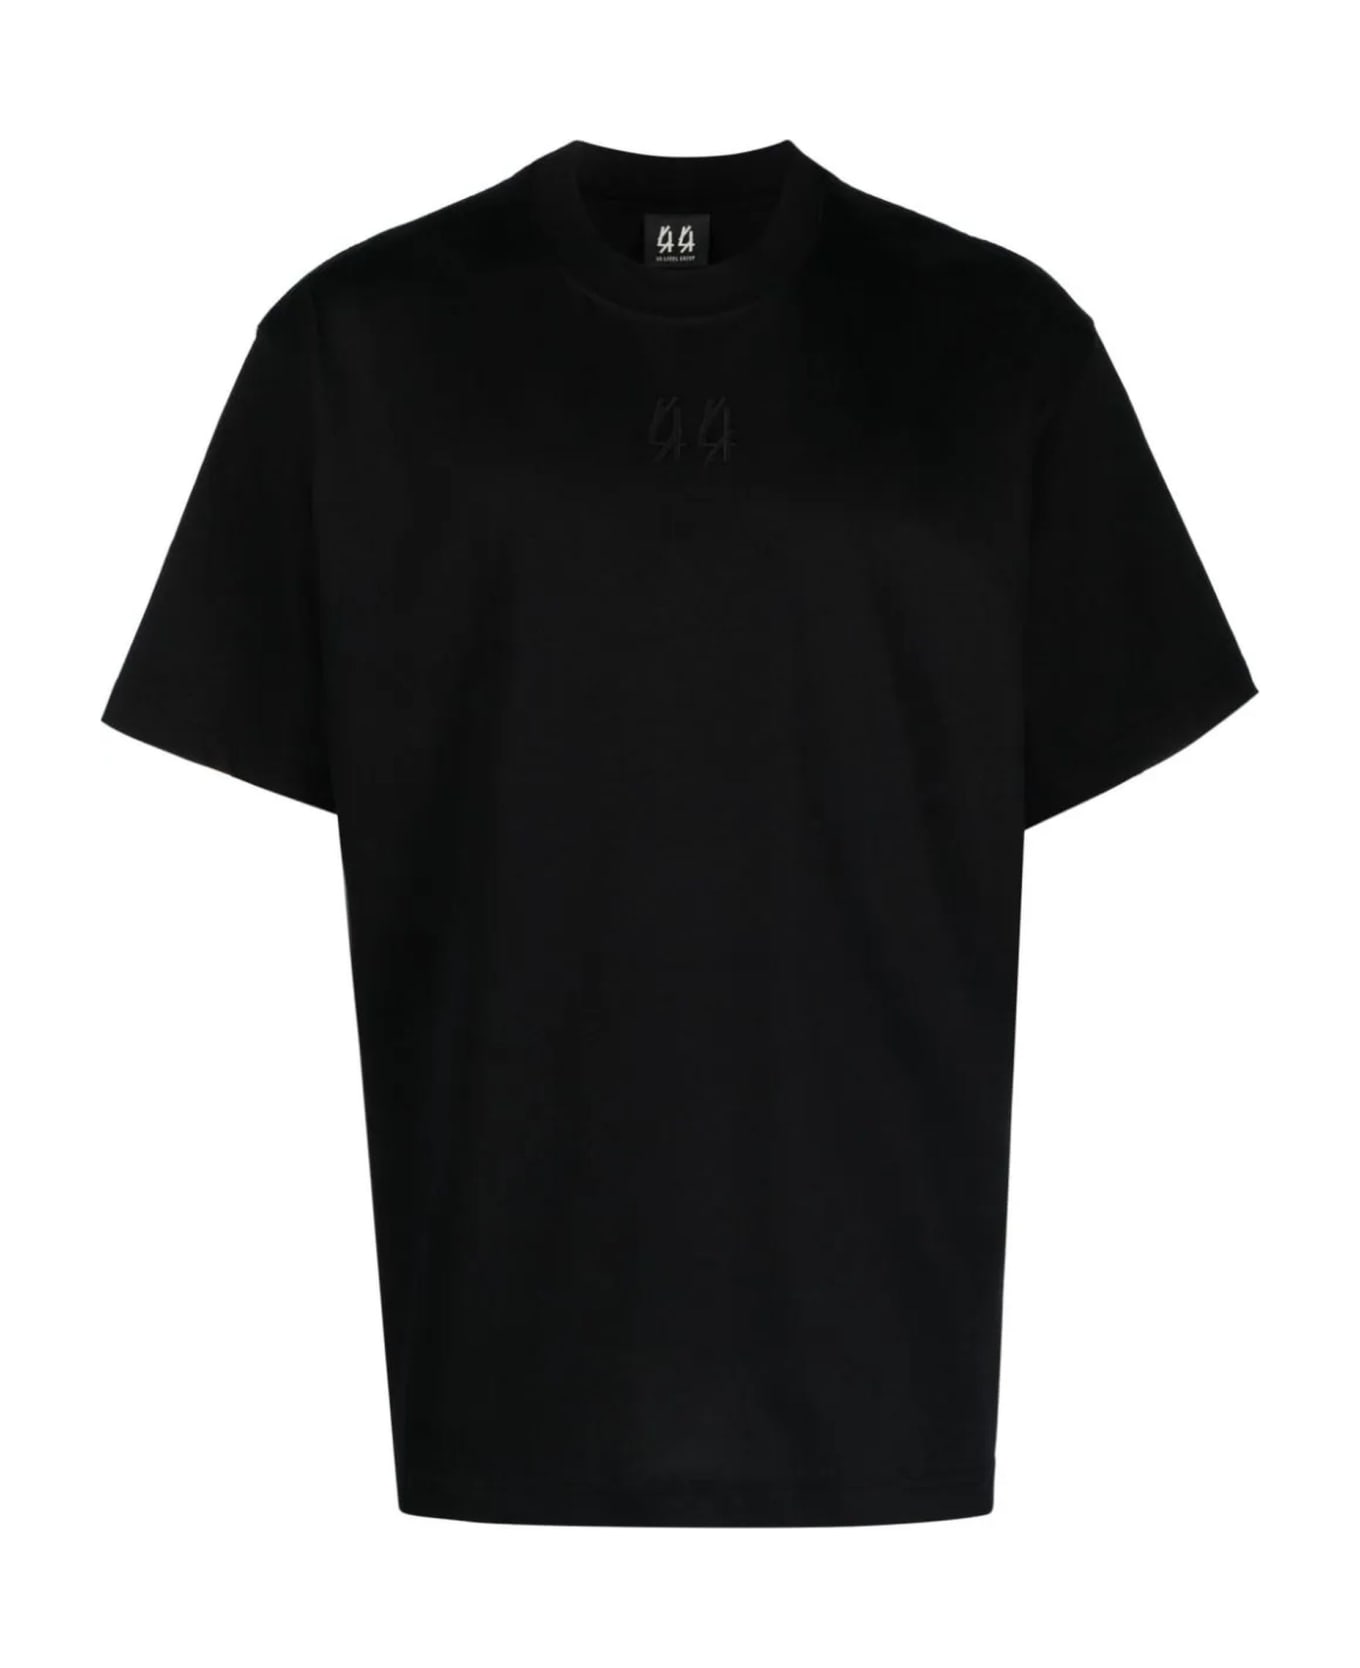 44 Label Group Black Cotton T-shirt